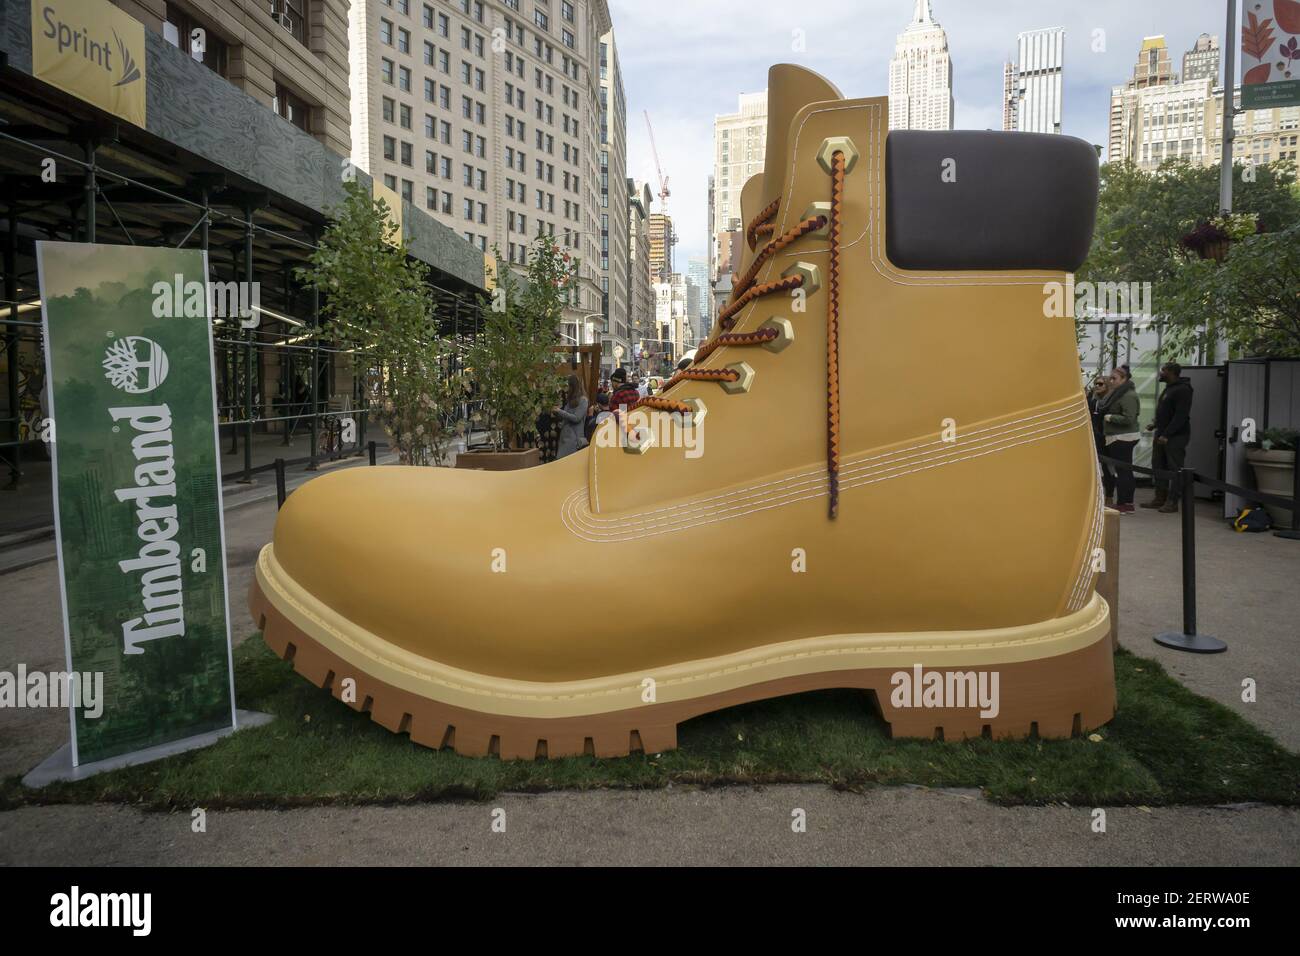 Una bota gigante de Timberland atrae a los visitantes a Flatiron Plaza en  Nueva York el martes, 16 de octubre de 2018, donde pueden poner un  suculento gratis en un evento de